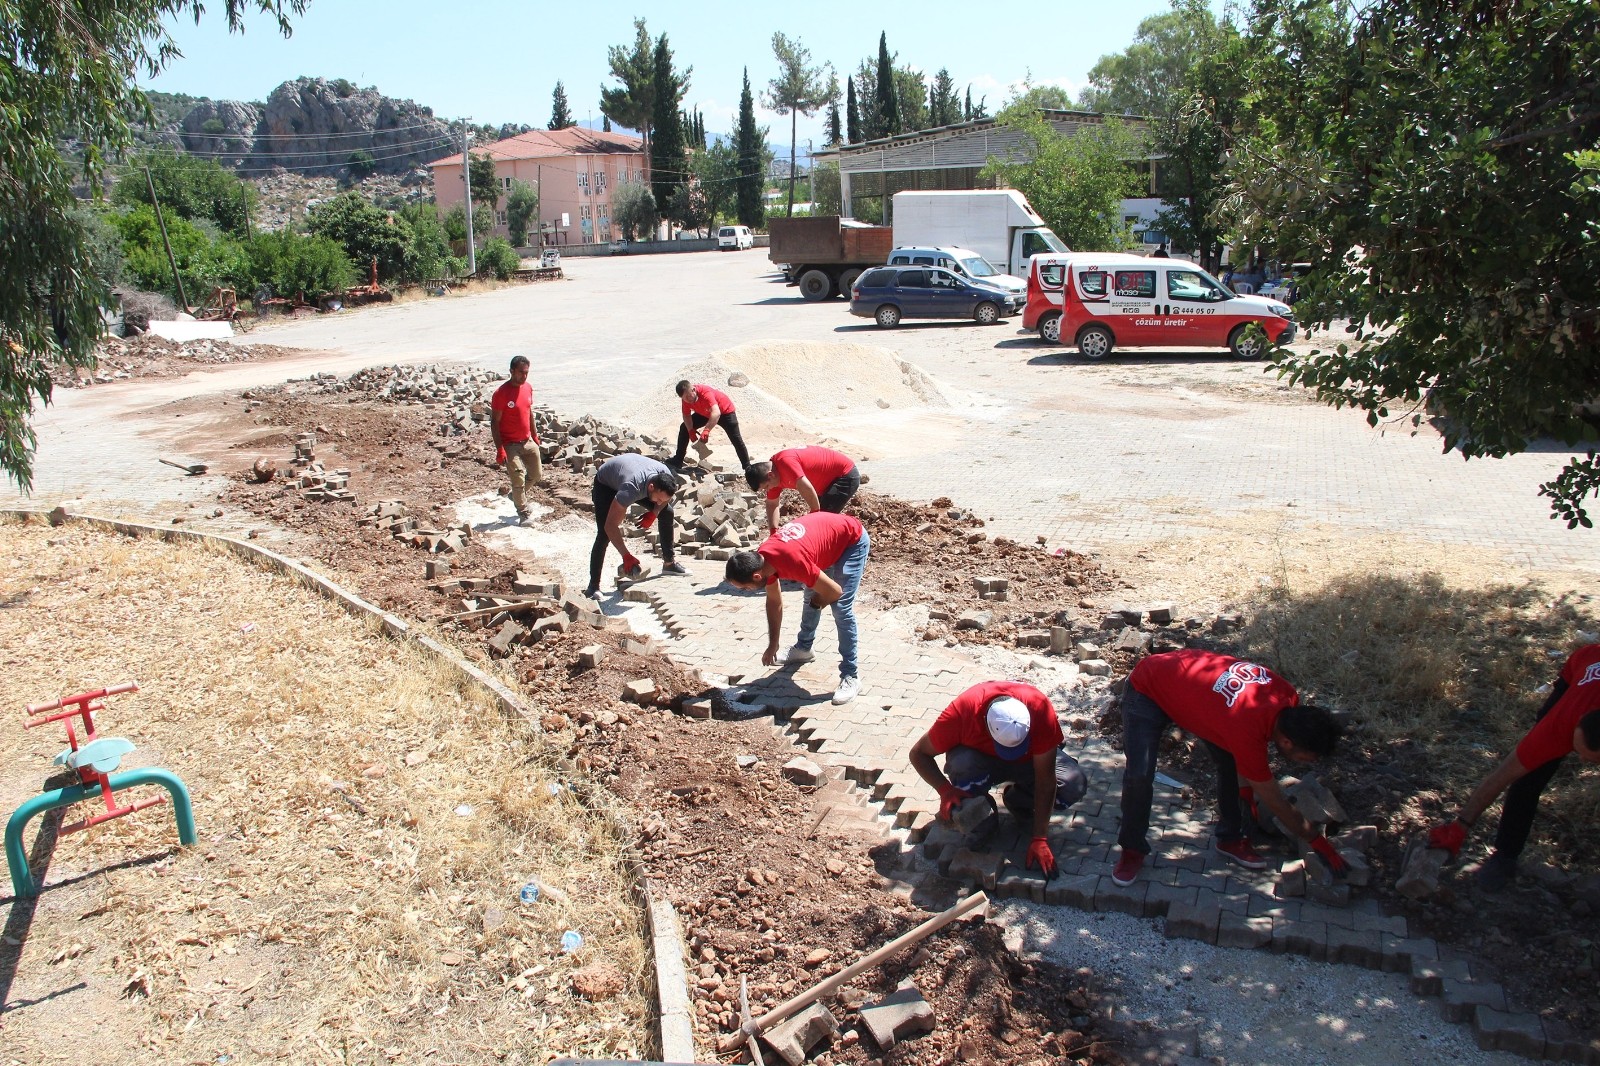 Döşemealtı Belediyesi’nin kurduğu Nar Masa, Kovanlık Mahalle Meydanı’nda bozulan parke taşlarının tamiratını gerçekleştirdi